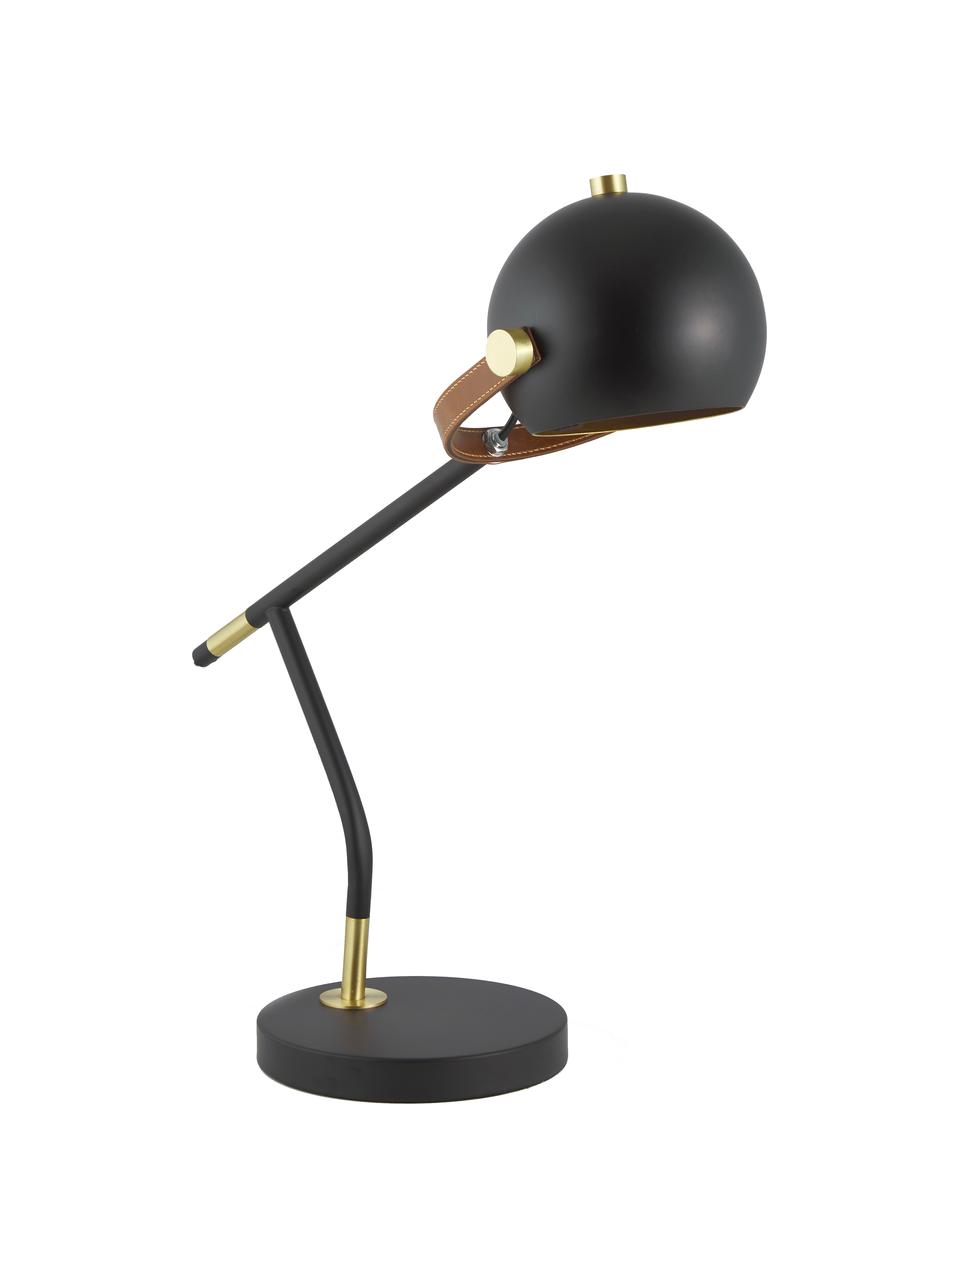 Große Schreibtischlampe Bow mit Leder-Dekor, Lampenschirm: Metall, lackiert, Lampenfuß: Metall, lackiert, Dekor: Kunstleder, Schwarz, 42 x 54 cm